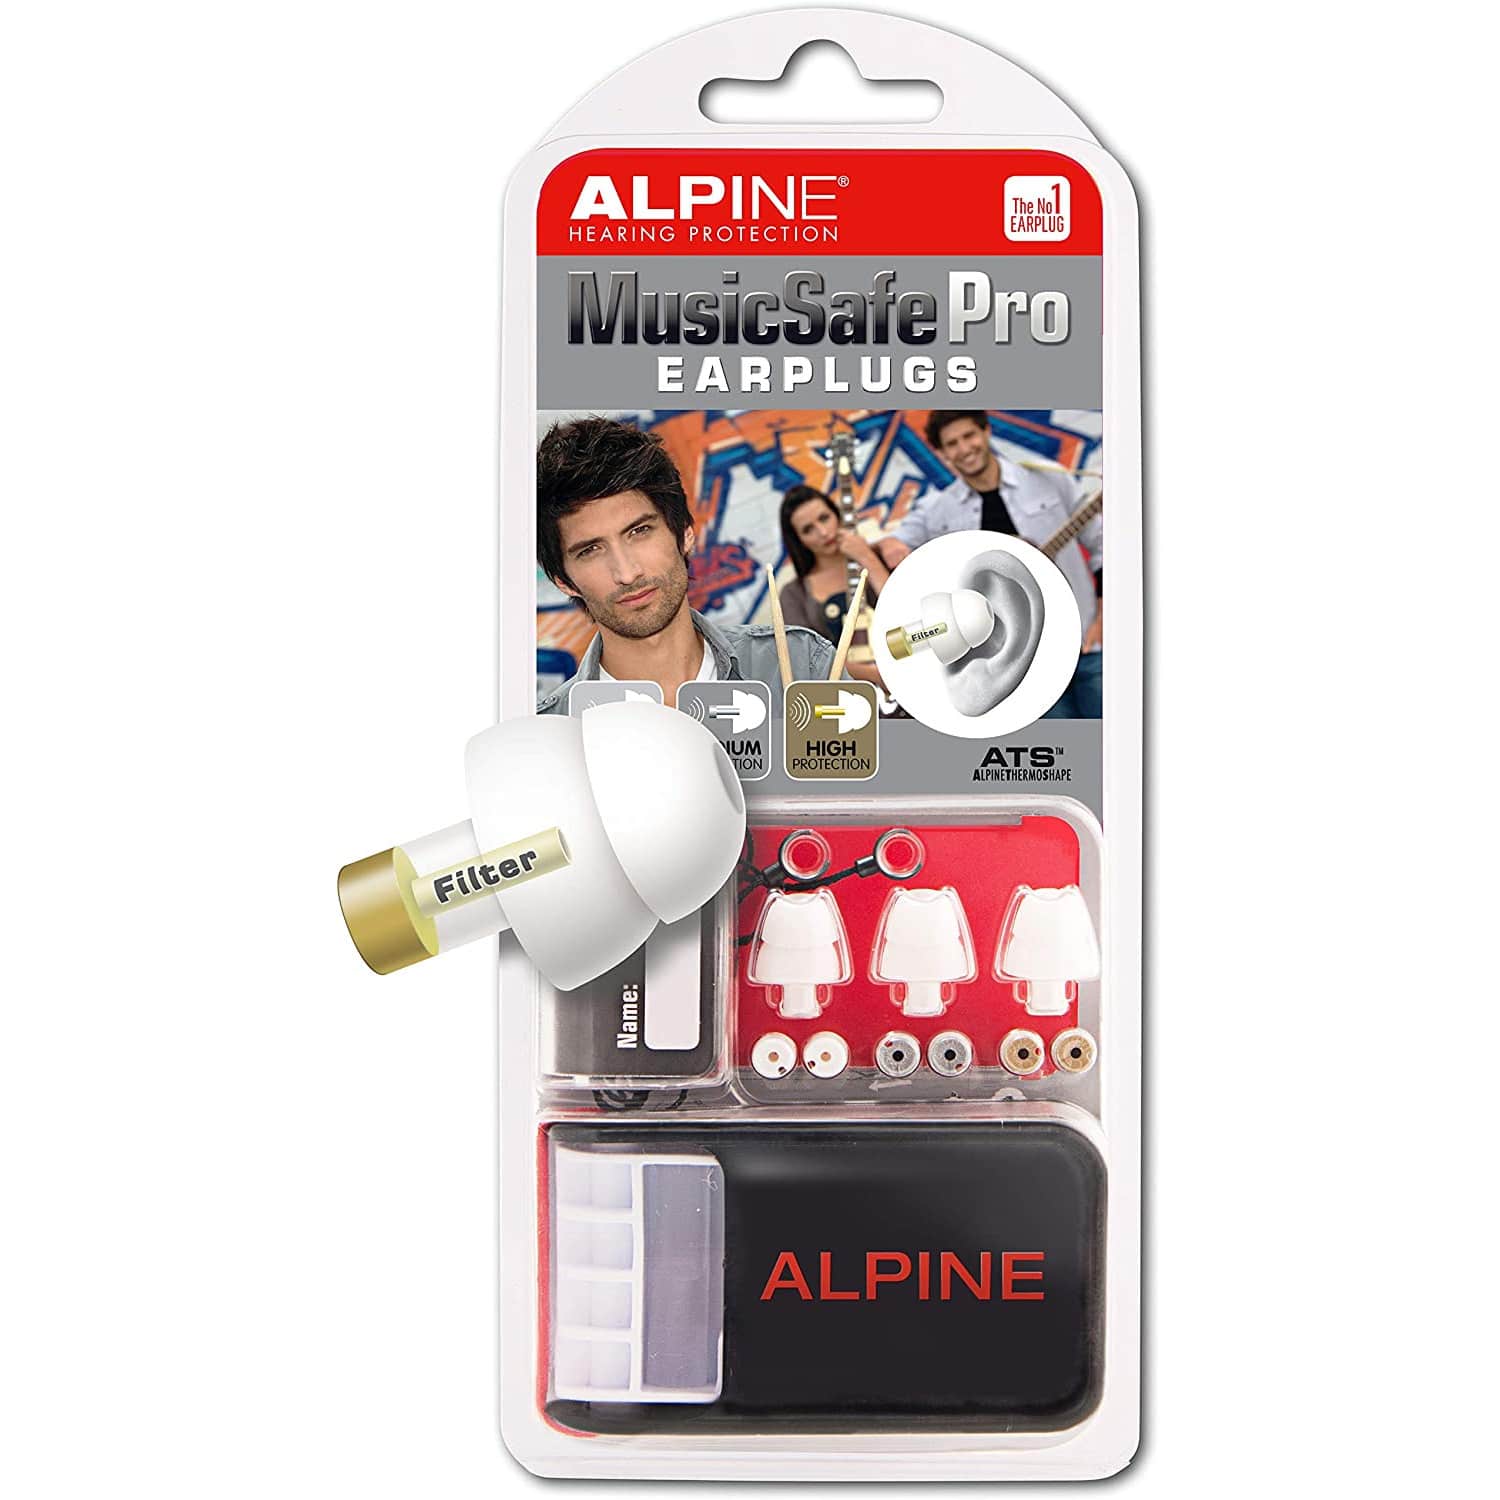 Alpine Musicsafe Pro